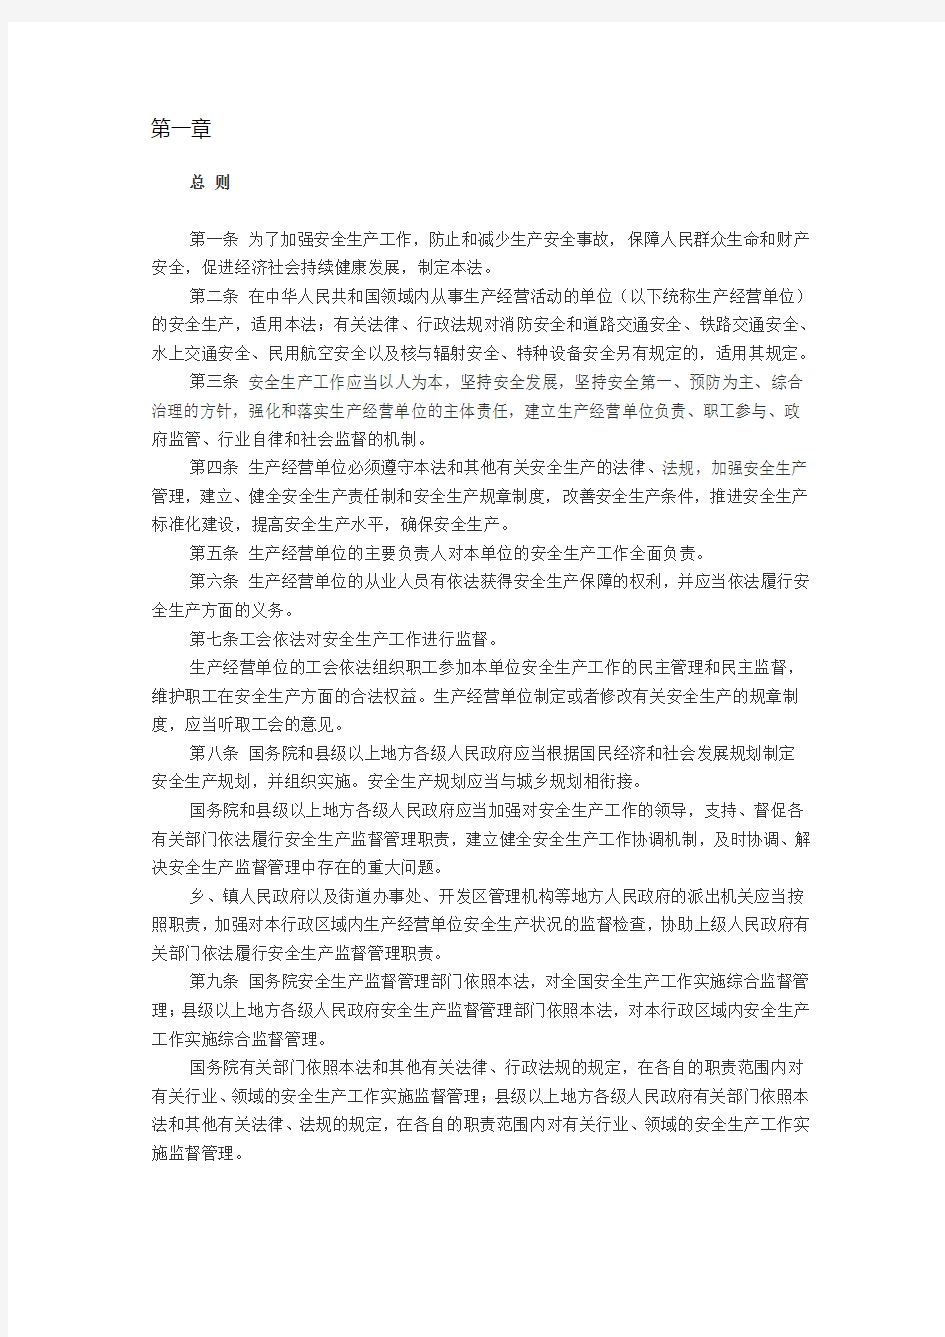 2014年新修订《中华人民共和国安全生产法》